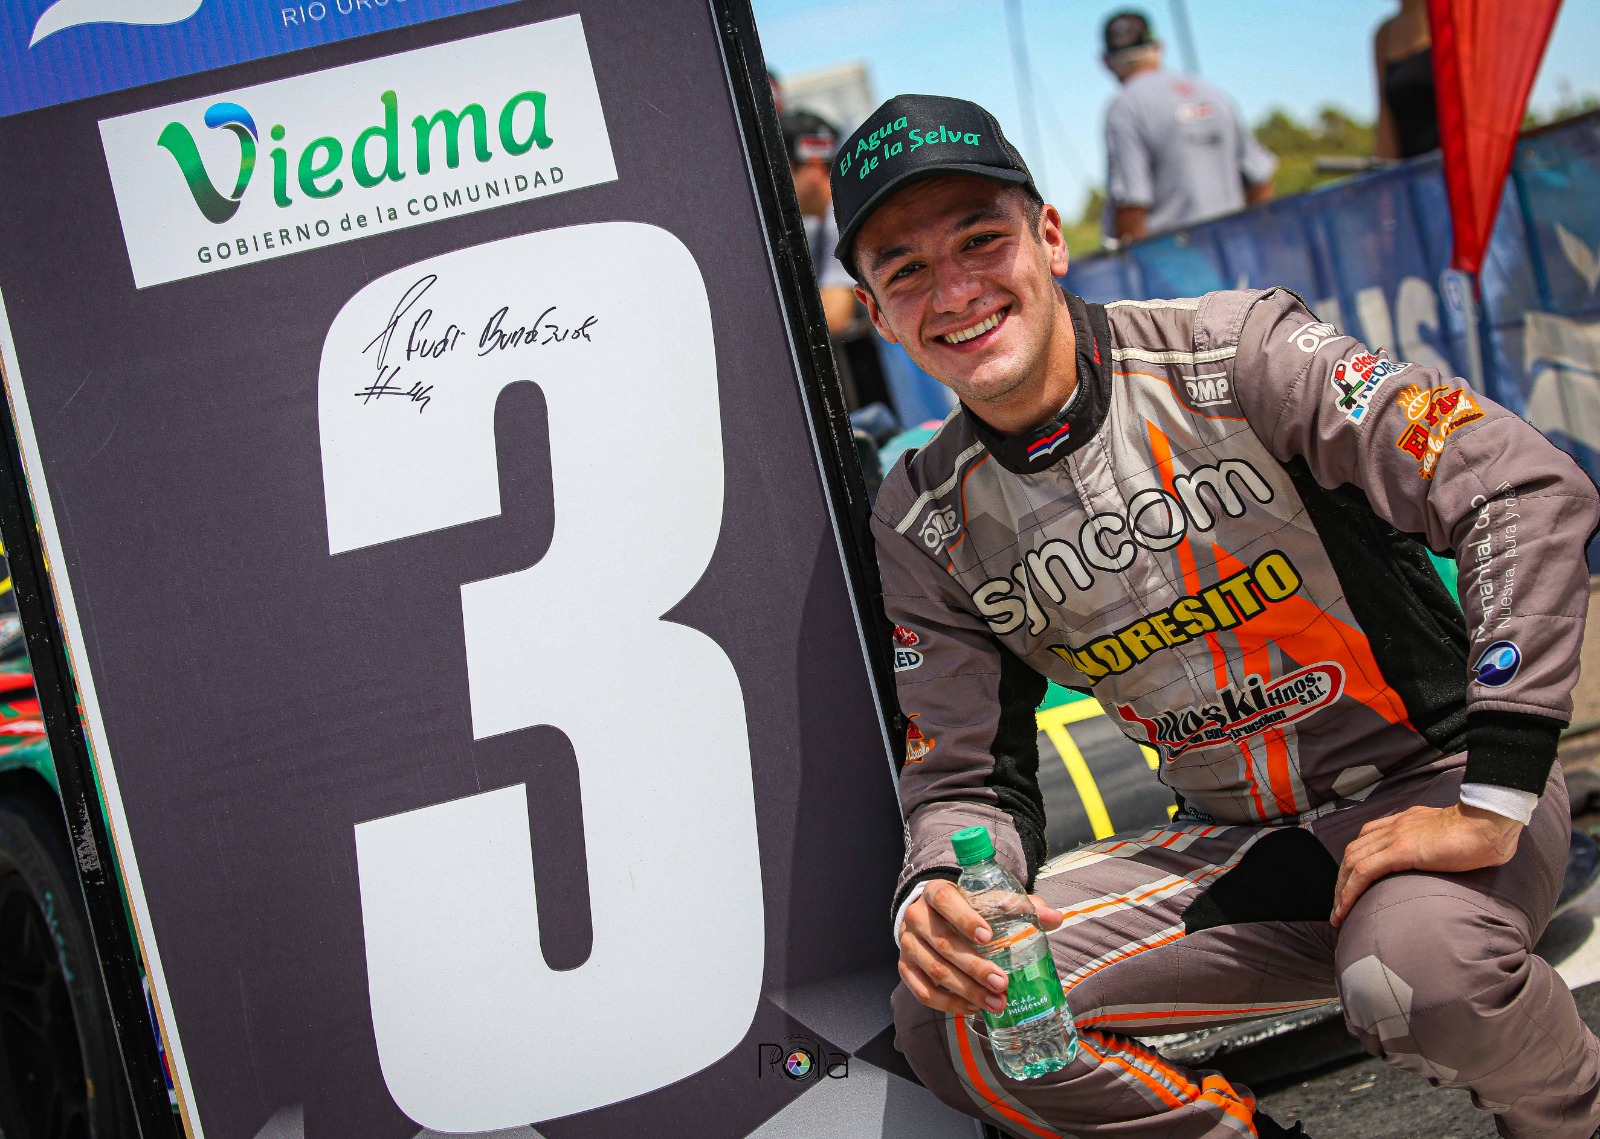 Automovilismo: Bundziak hizo podio en su carrera debut en el TC Pista imagen-1